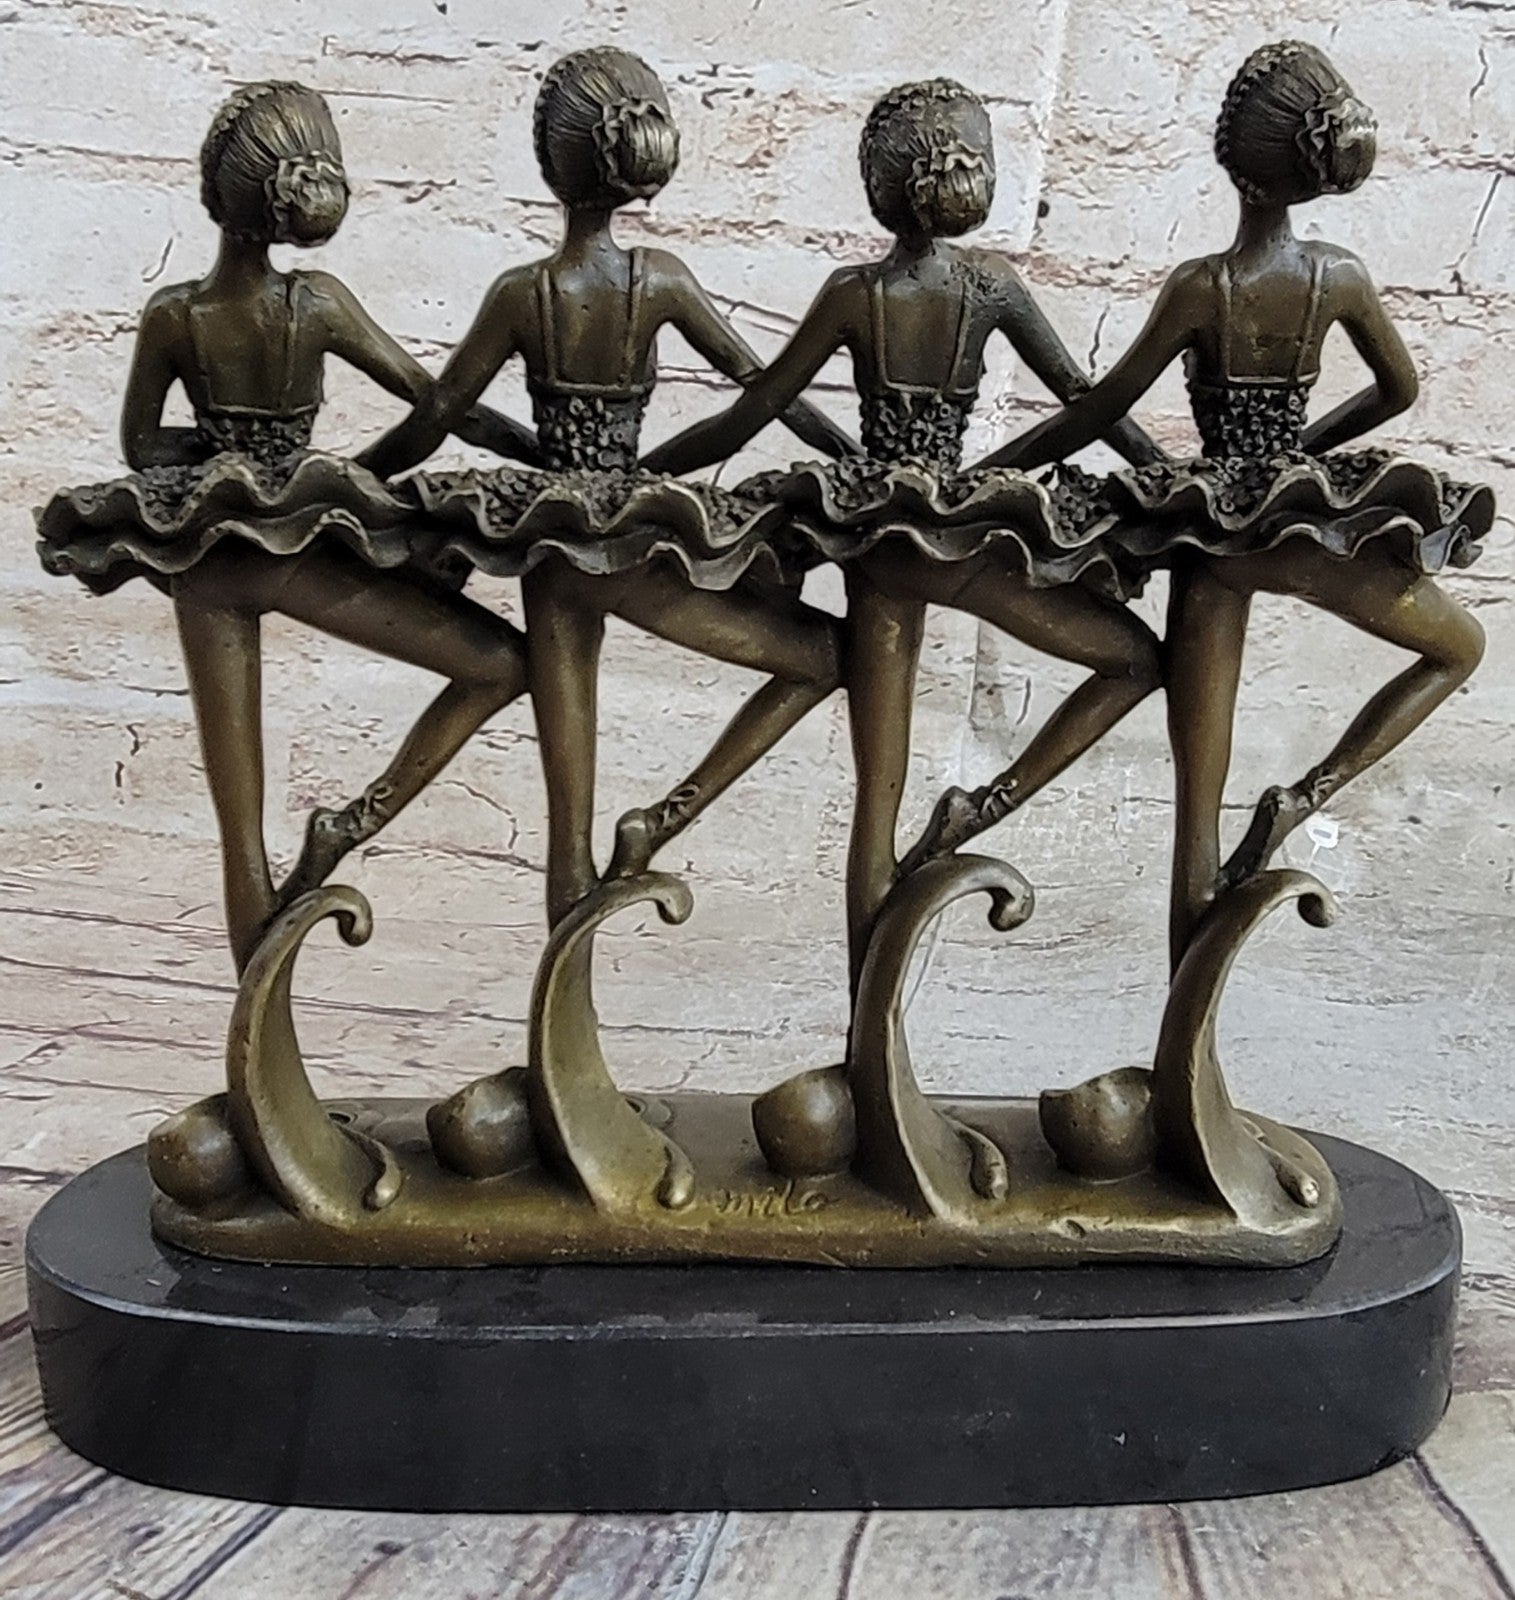 Group Of Ballerina Dancers Hot Cast Signed Original Milo Bronze Sculpture Figuri